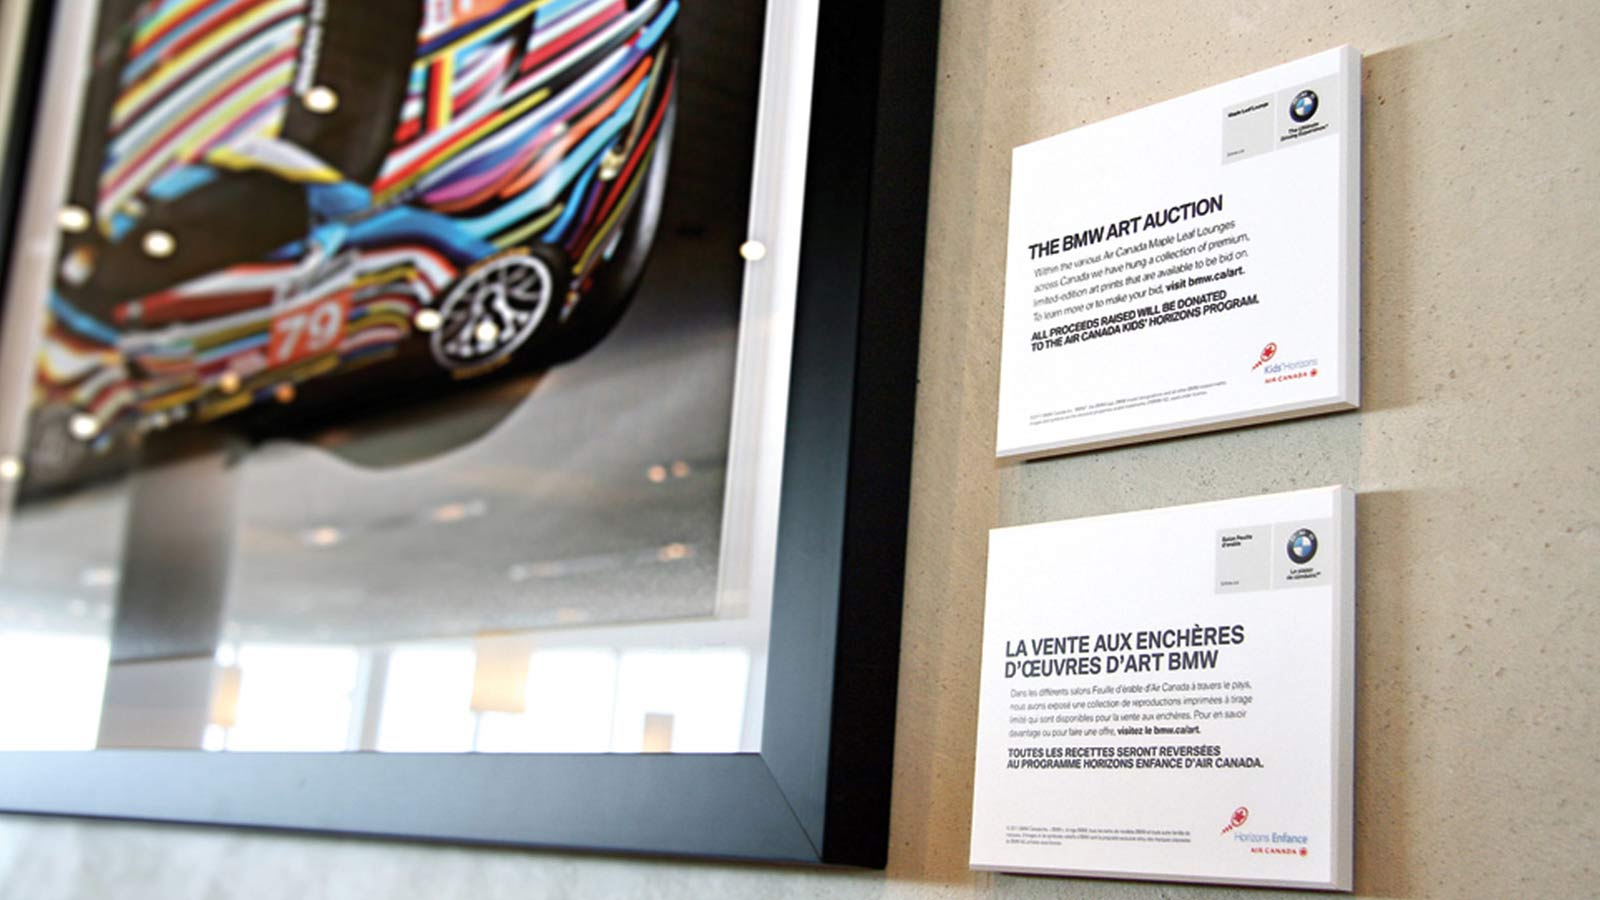 BMW Canada | BMW Art Auction | Digital Innovation, Digital Marketing, Social Media, Strategy